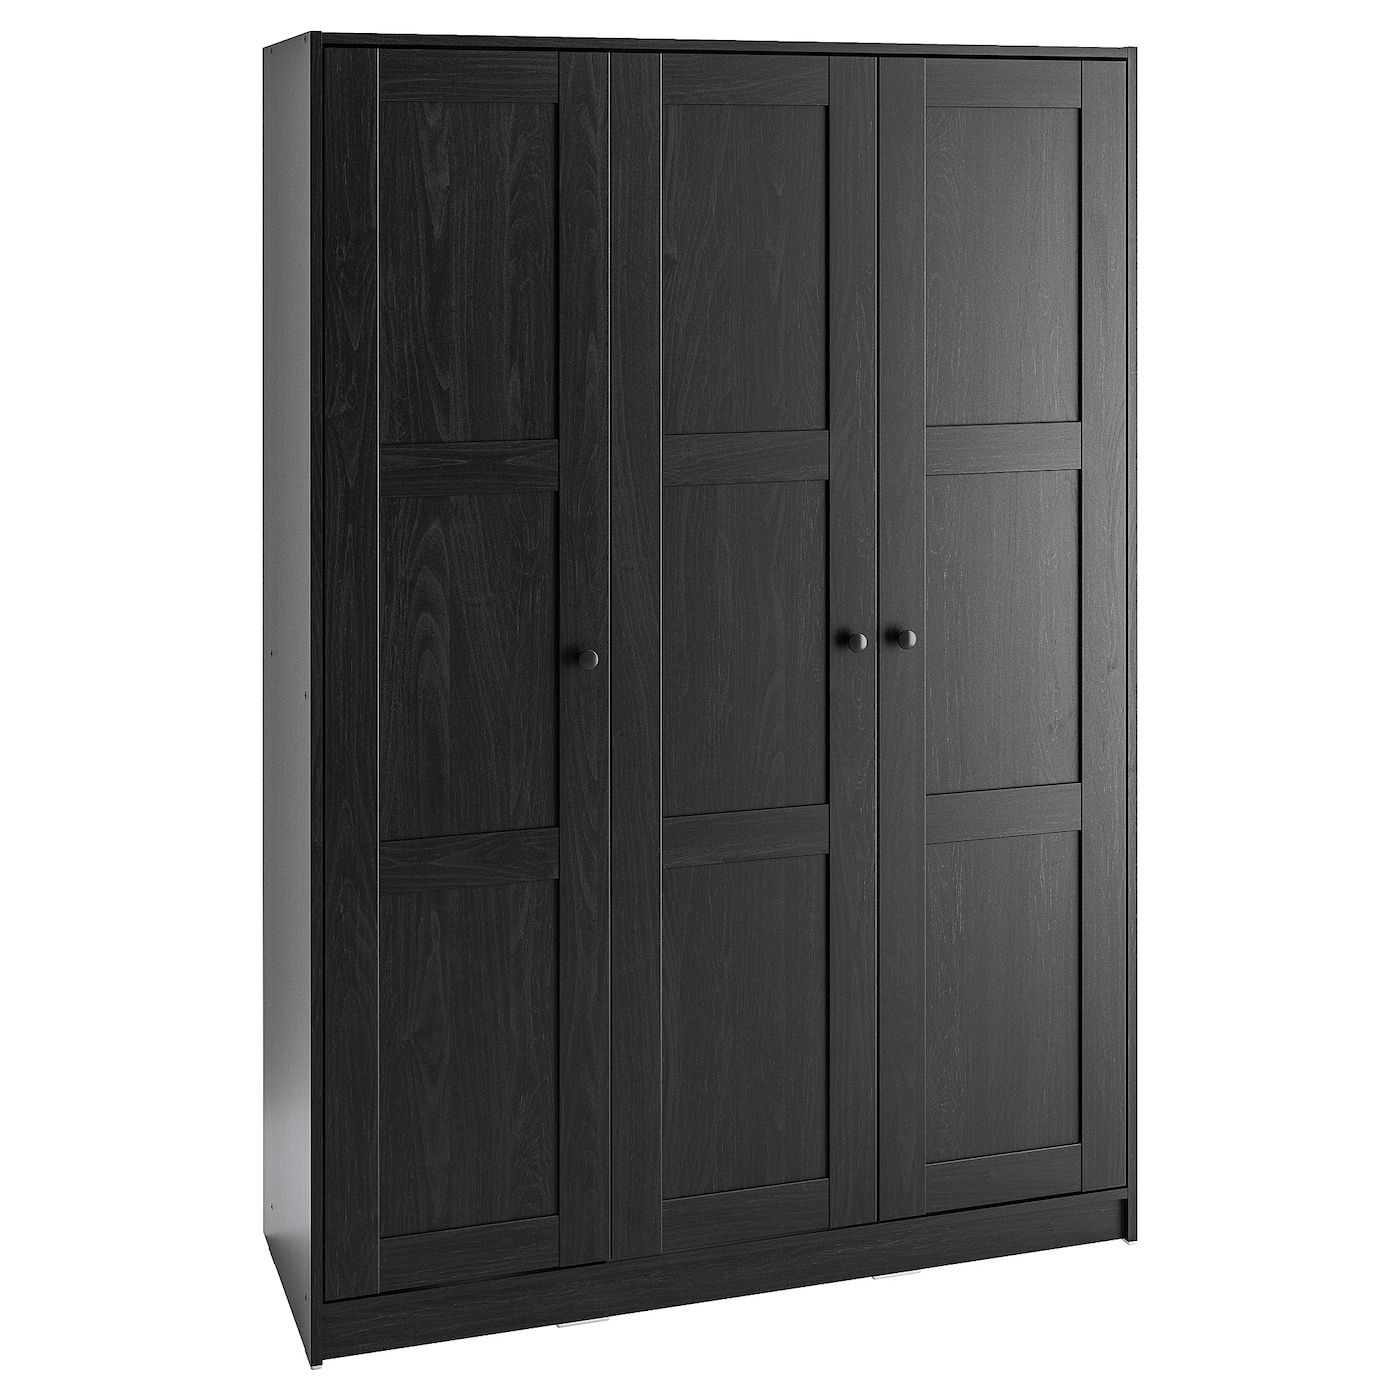 Rakkestad Wardrobe With 3 Doors, Black Brown, 117x176 Cm – Ikea With 3 Door Black Wardrobes (View 4 of 20)